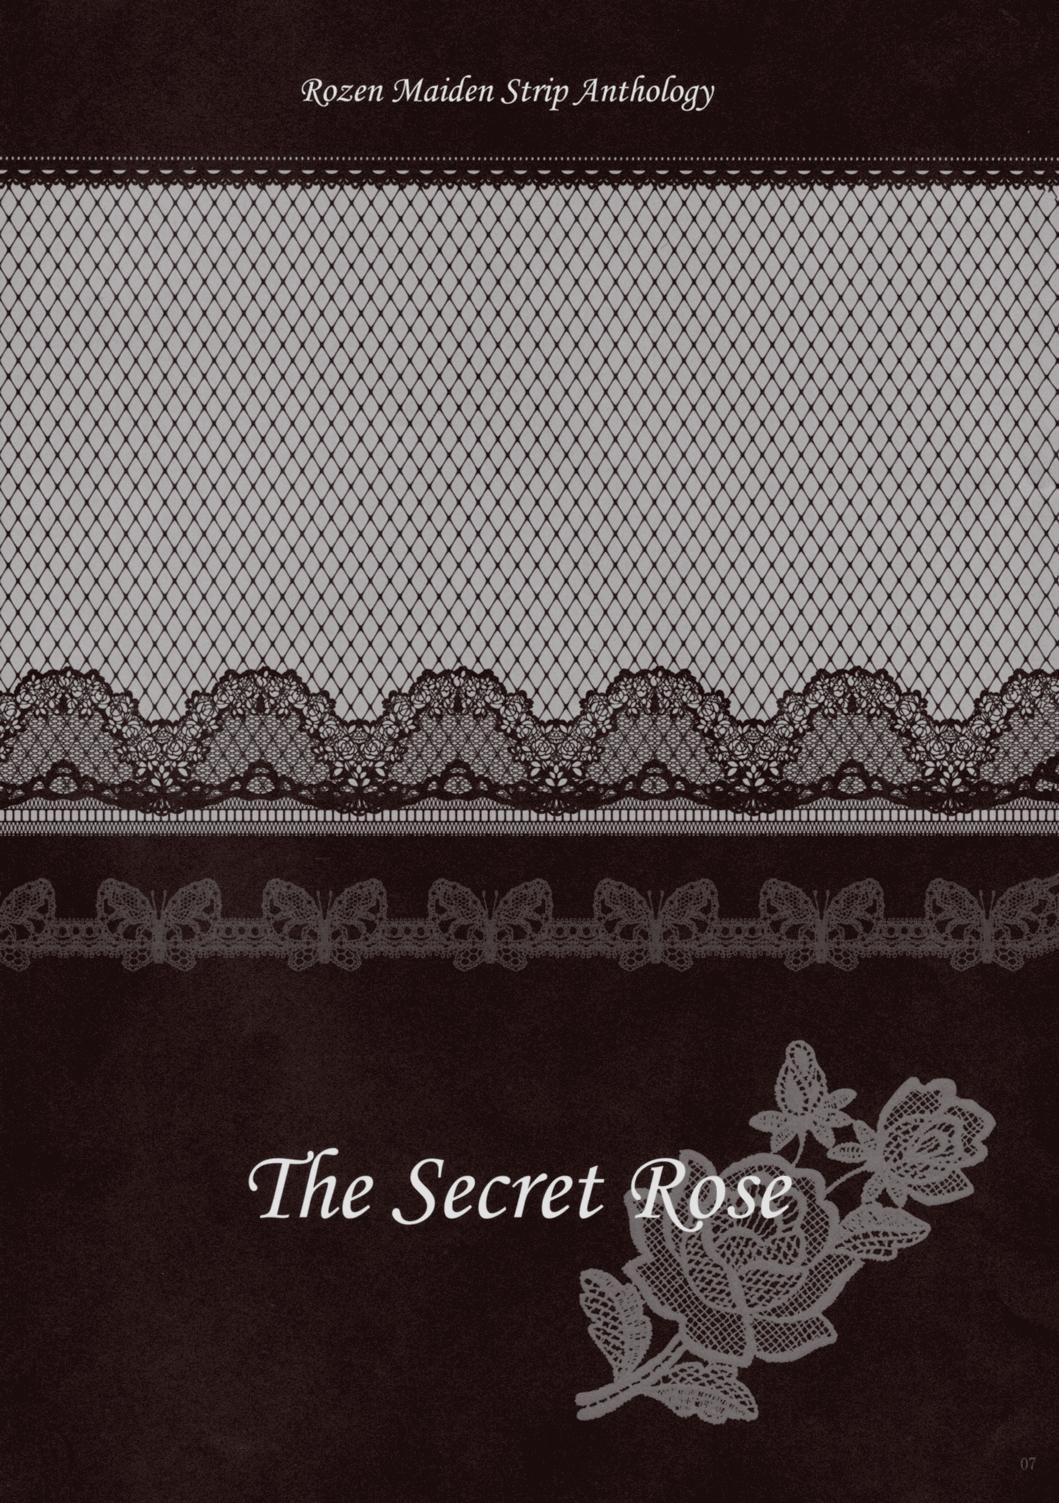 Calcinha Rozen Maiden Strip Gallery "The Secret Rose" - Rozen maiden Blow Job - Page 6